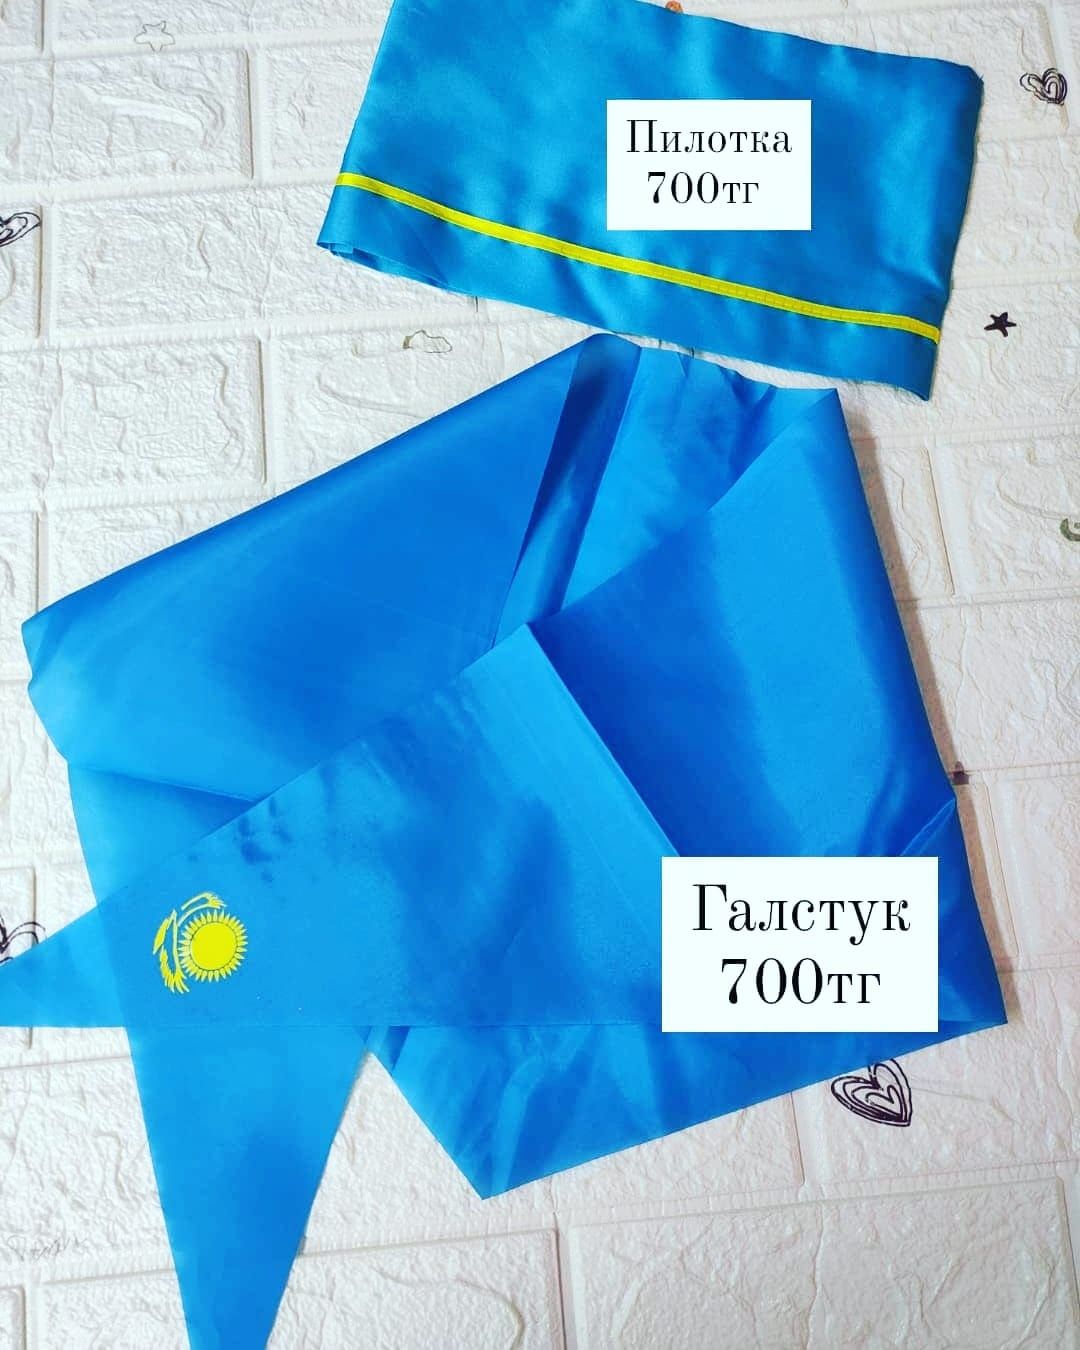 Голубые пилотки галстуки от700 тг